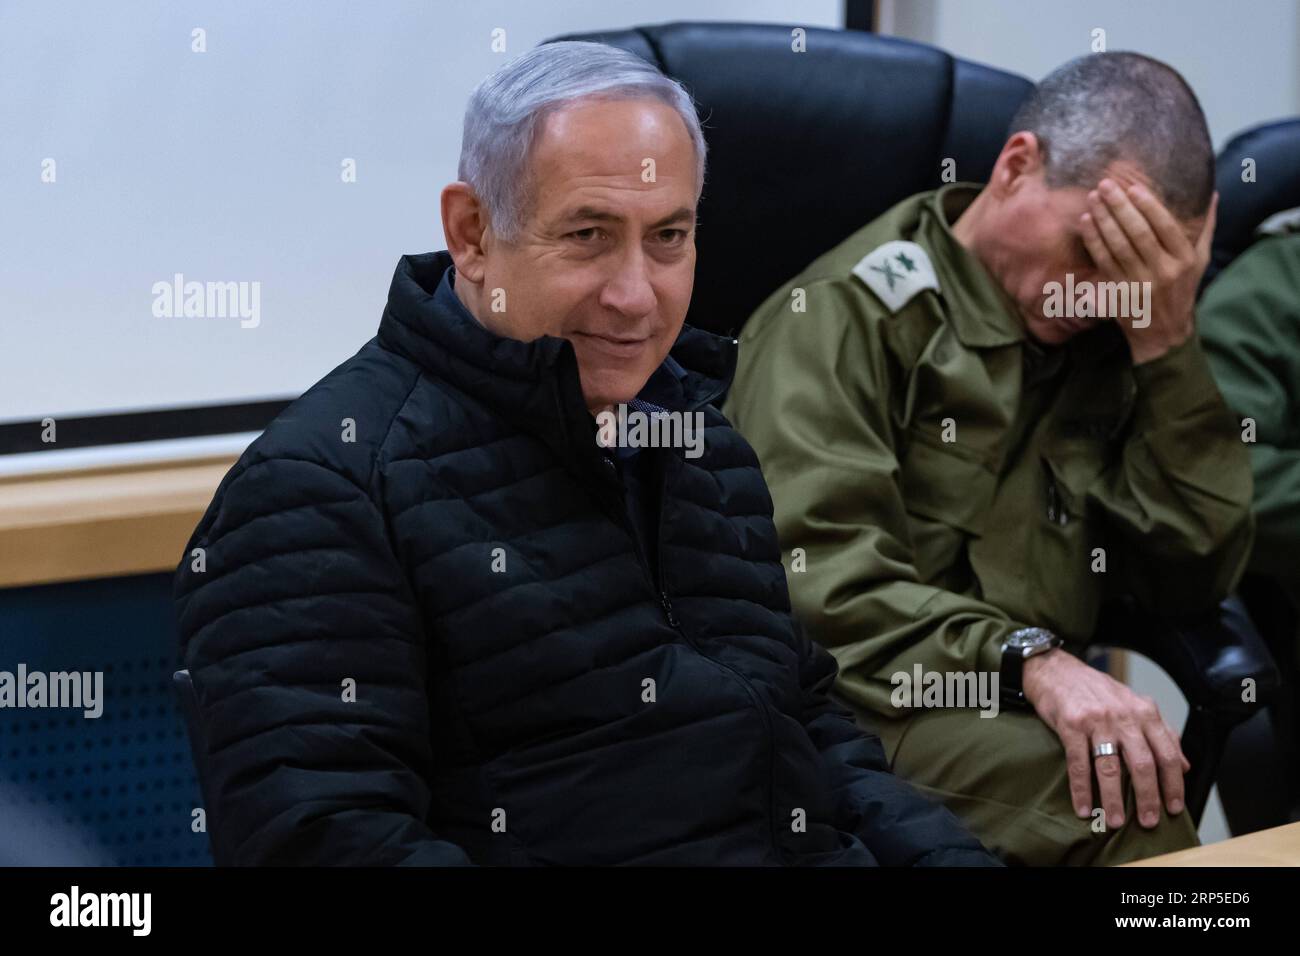 (181211) -- SAFED (ISRAELE), 11 dicembre 2018 -- il primo ministro israeliano Benjamin Netanyahu (L) è visto durante una visita alla base di comando settentrionale nella città israeliana settentrionale di Safed, l'11 dicembre 2018. Martedì Benjamin Netanyahu ha avvertito che la milizia libanese di Hezbollah subirà colpi inimmaginabili se resisterà alla recente operazione israeliana di distruggere i tunnel transfrontalieri. JINI/) ISRAEL-SAFED-PM-NORTHERN BORDER-VISIT AYALXMARGOLIN PUBLICATIONXNOTXINXCHN Foto Stock